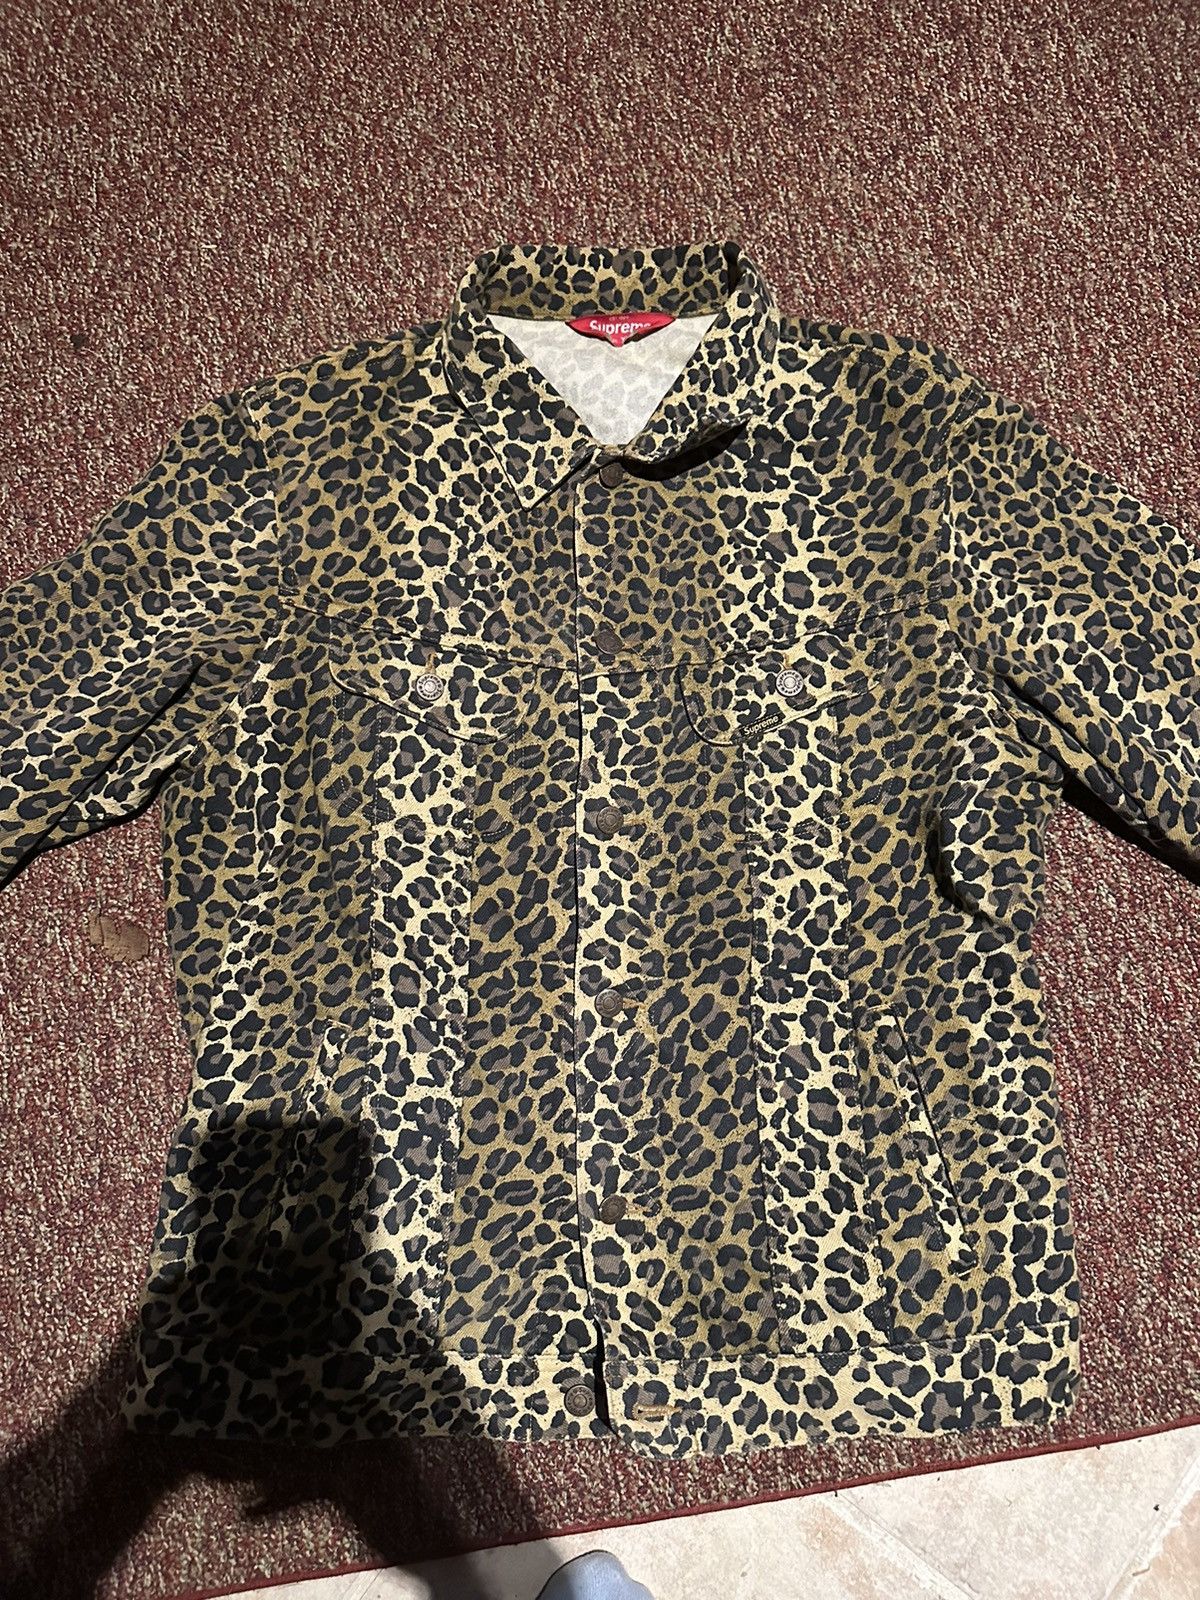 Supreme SS15 Supreme Leopard Denim Jacket | Grailed